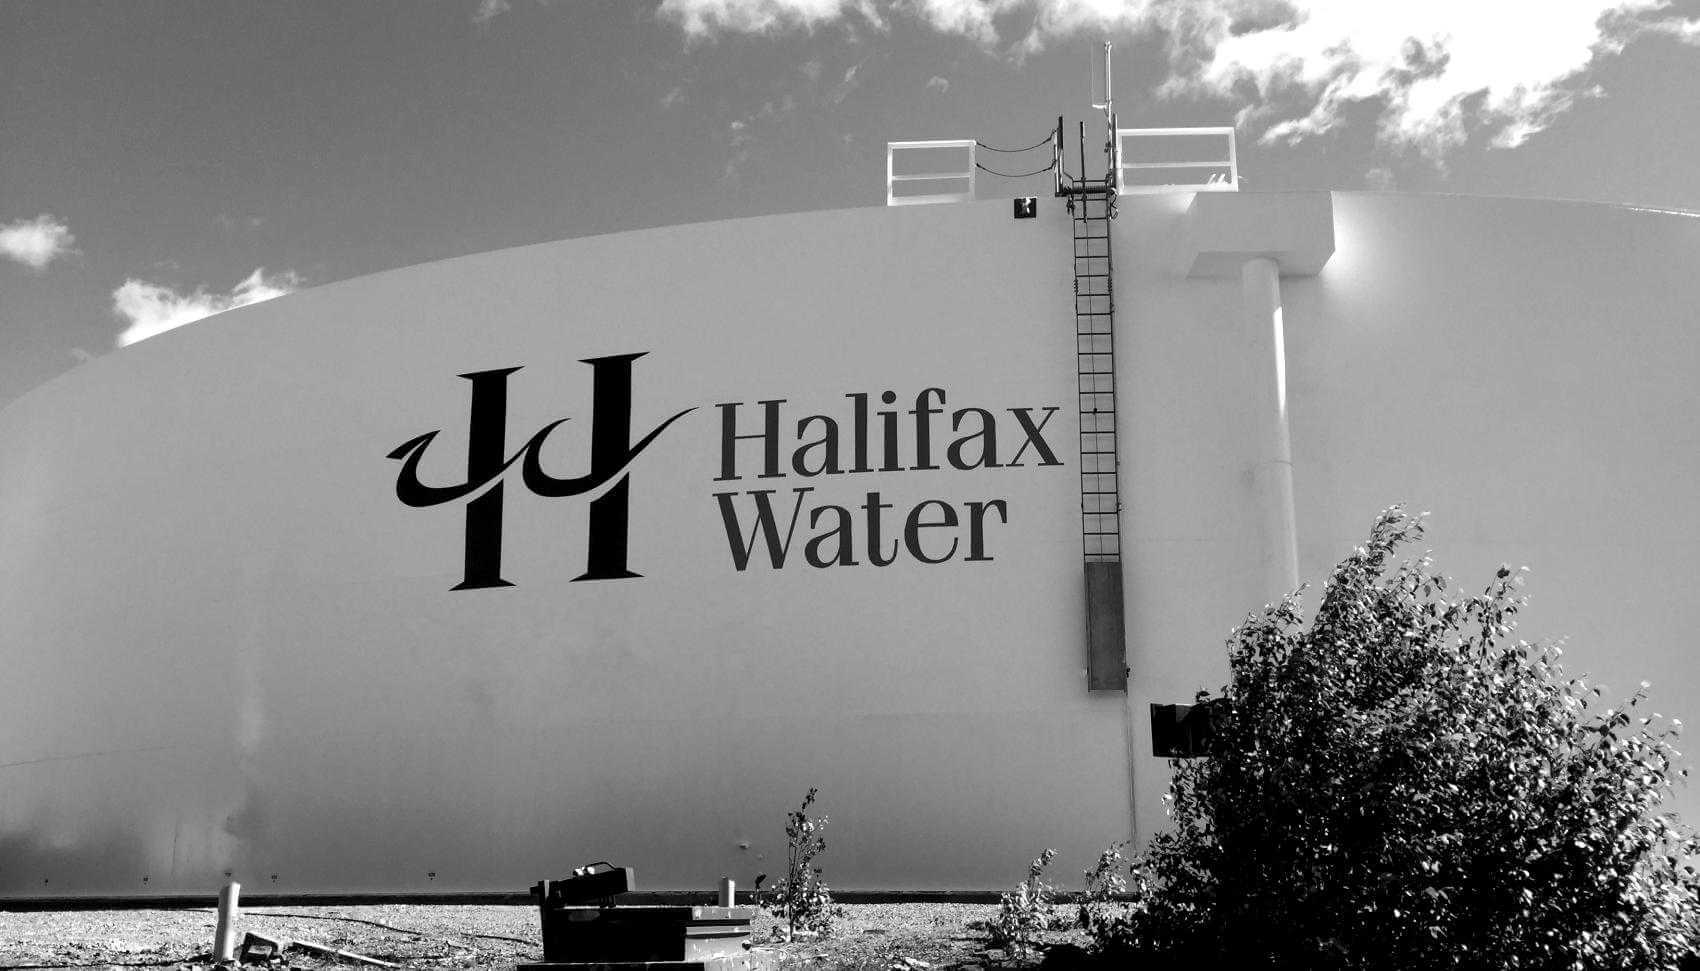 Halifax Water Reservoir